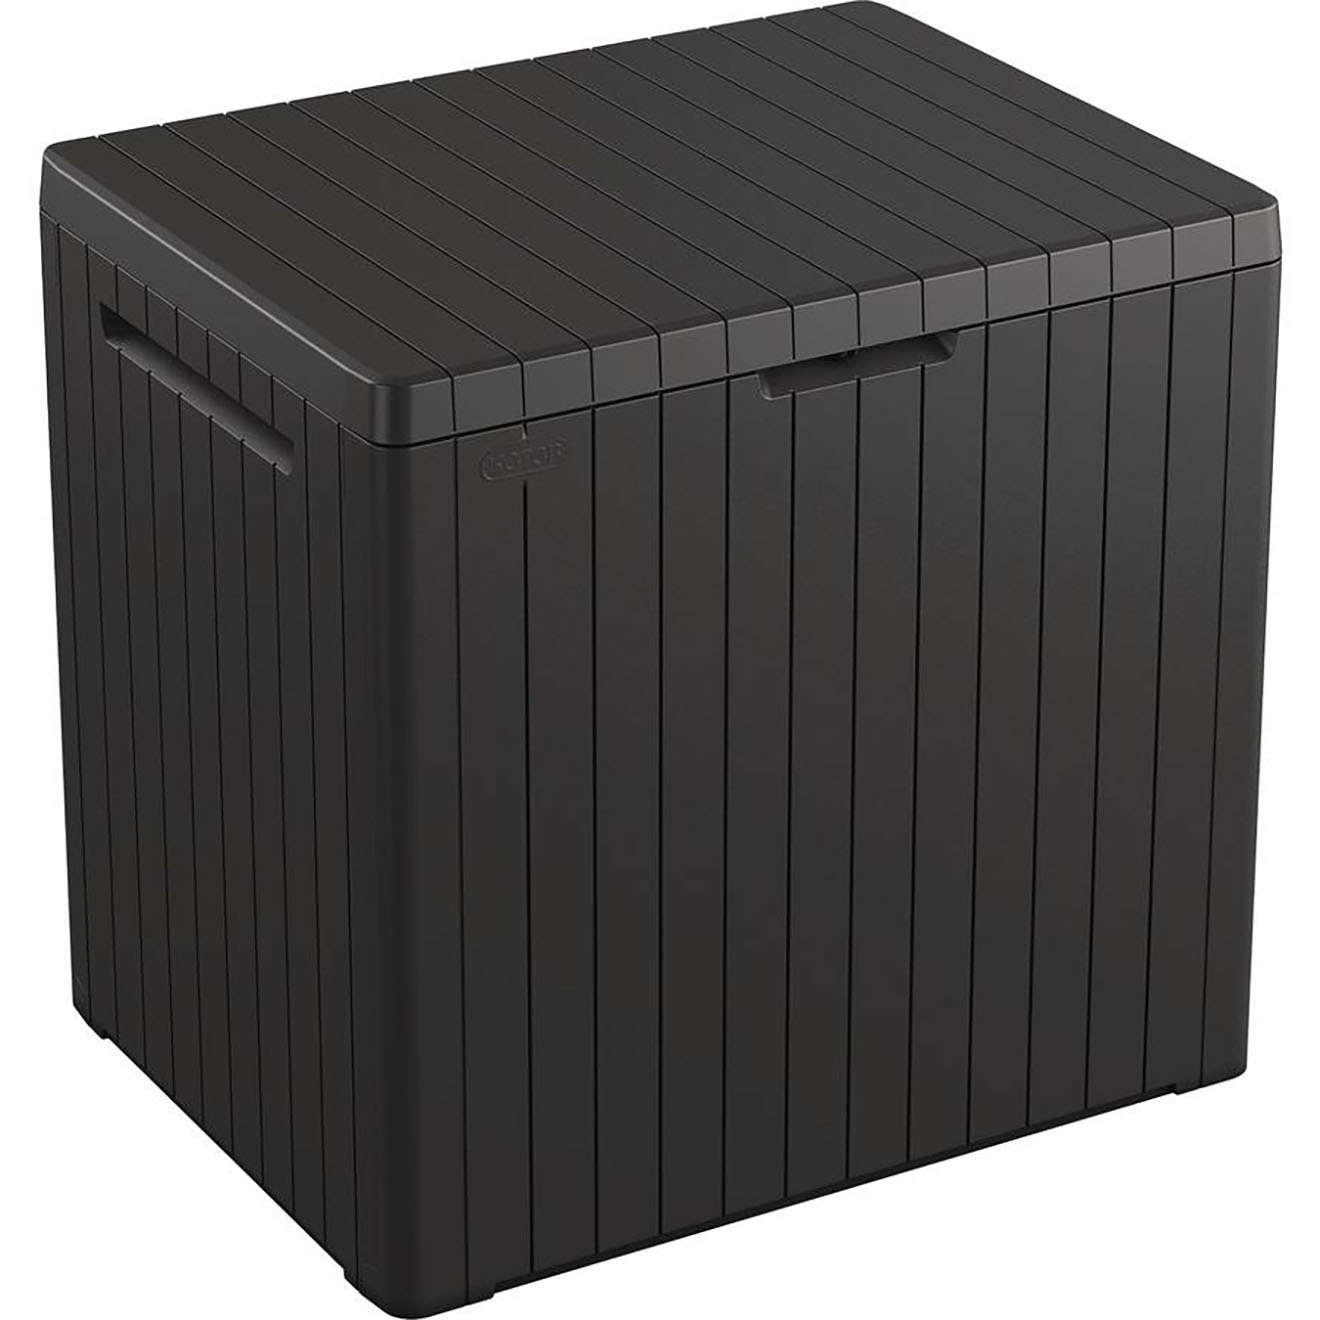 Coffre de jardin résine City Cube anthracite - 58x44x55 cm